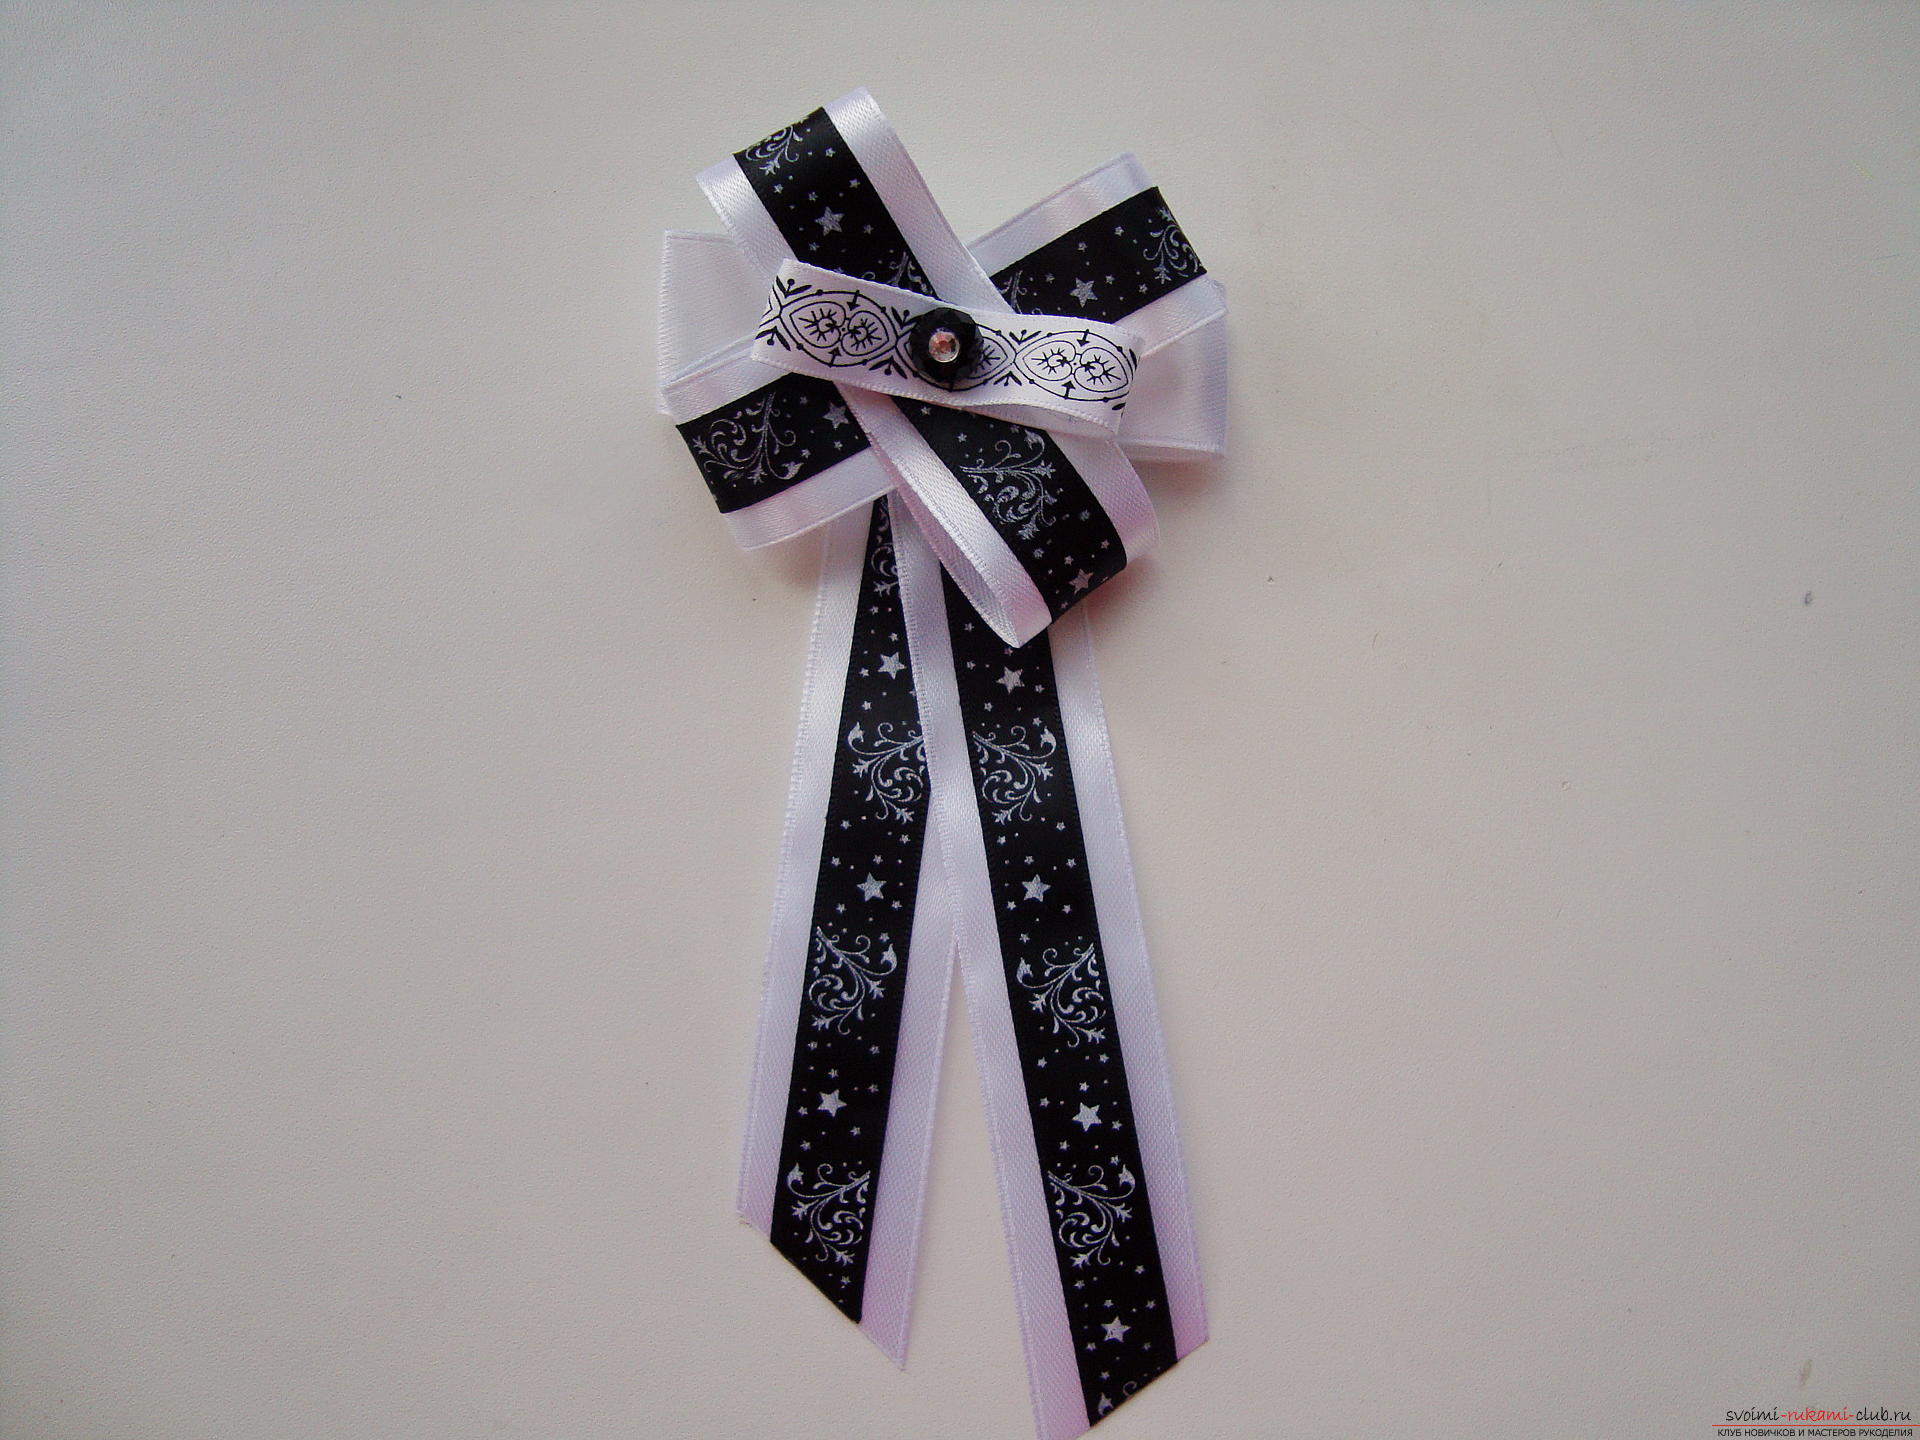 Стильный галстук для девочки га 1 сентября. Пошаговая инструкция по изготовлению галстука своими руками